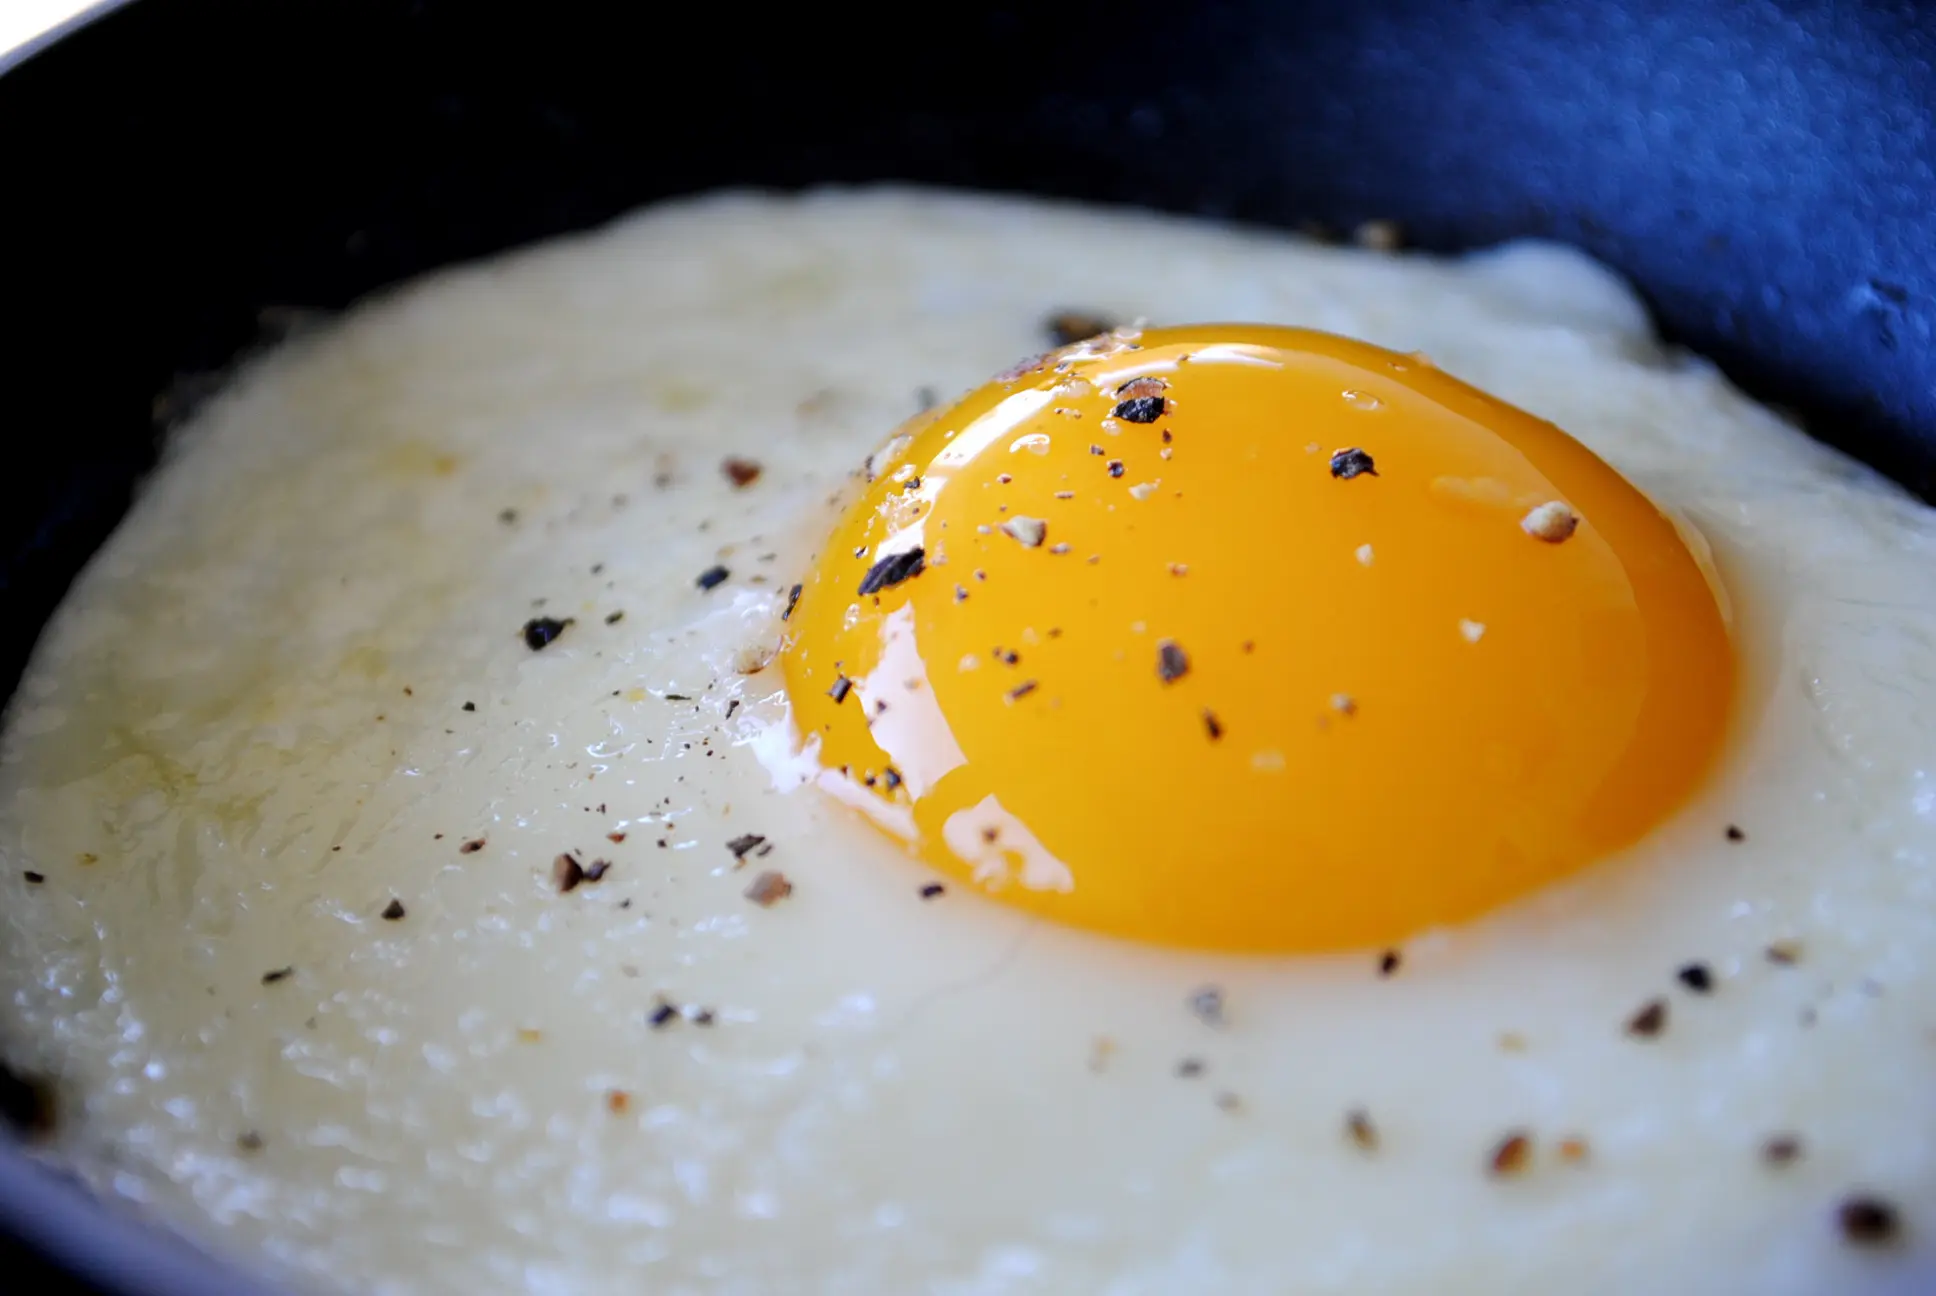 Benarkah terlalu sering makan telur bisa bikin bisul? Simak jawabannya di sini! (Sumber Foto: cooking.stackexchange.com)